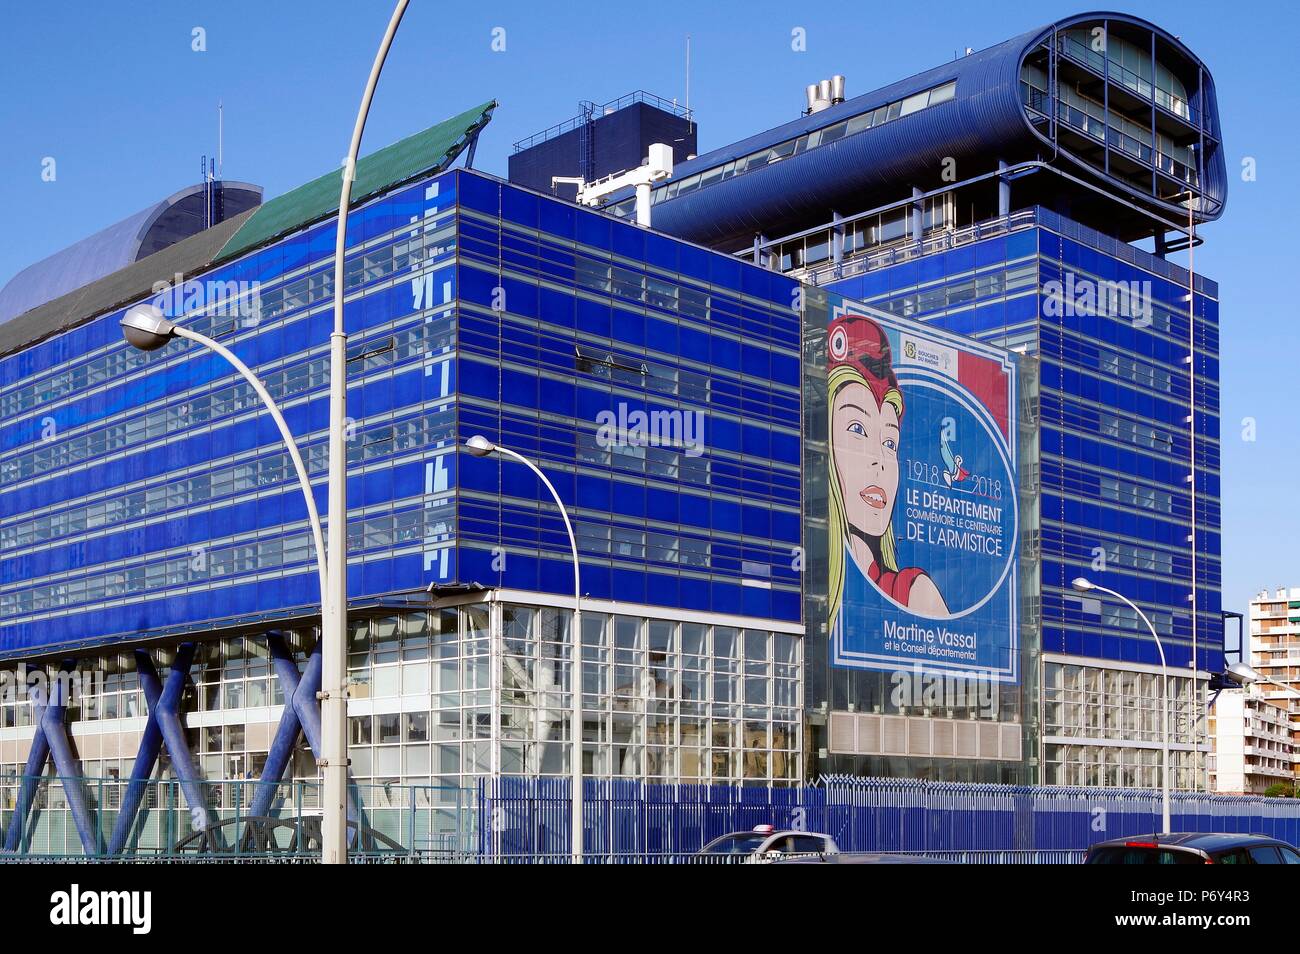 S & E elevations of Le Grand Bleu, Hotel de Département, Bouches de Rhone,  Marseille, France, local govt, massive dark blue colour high-tech building  Stock Photo - Alamy